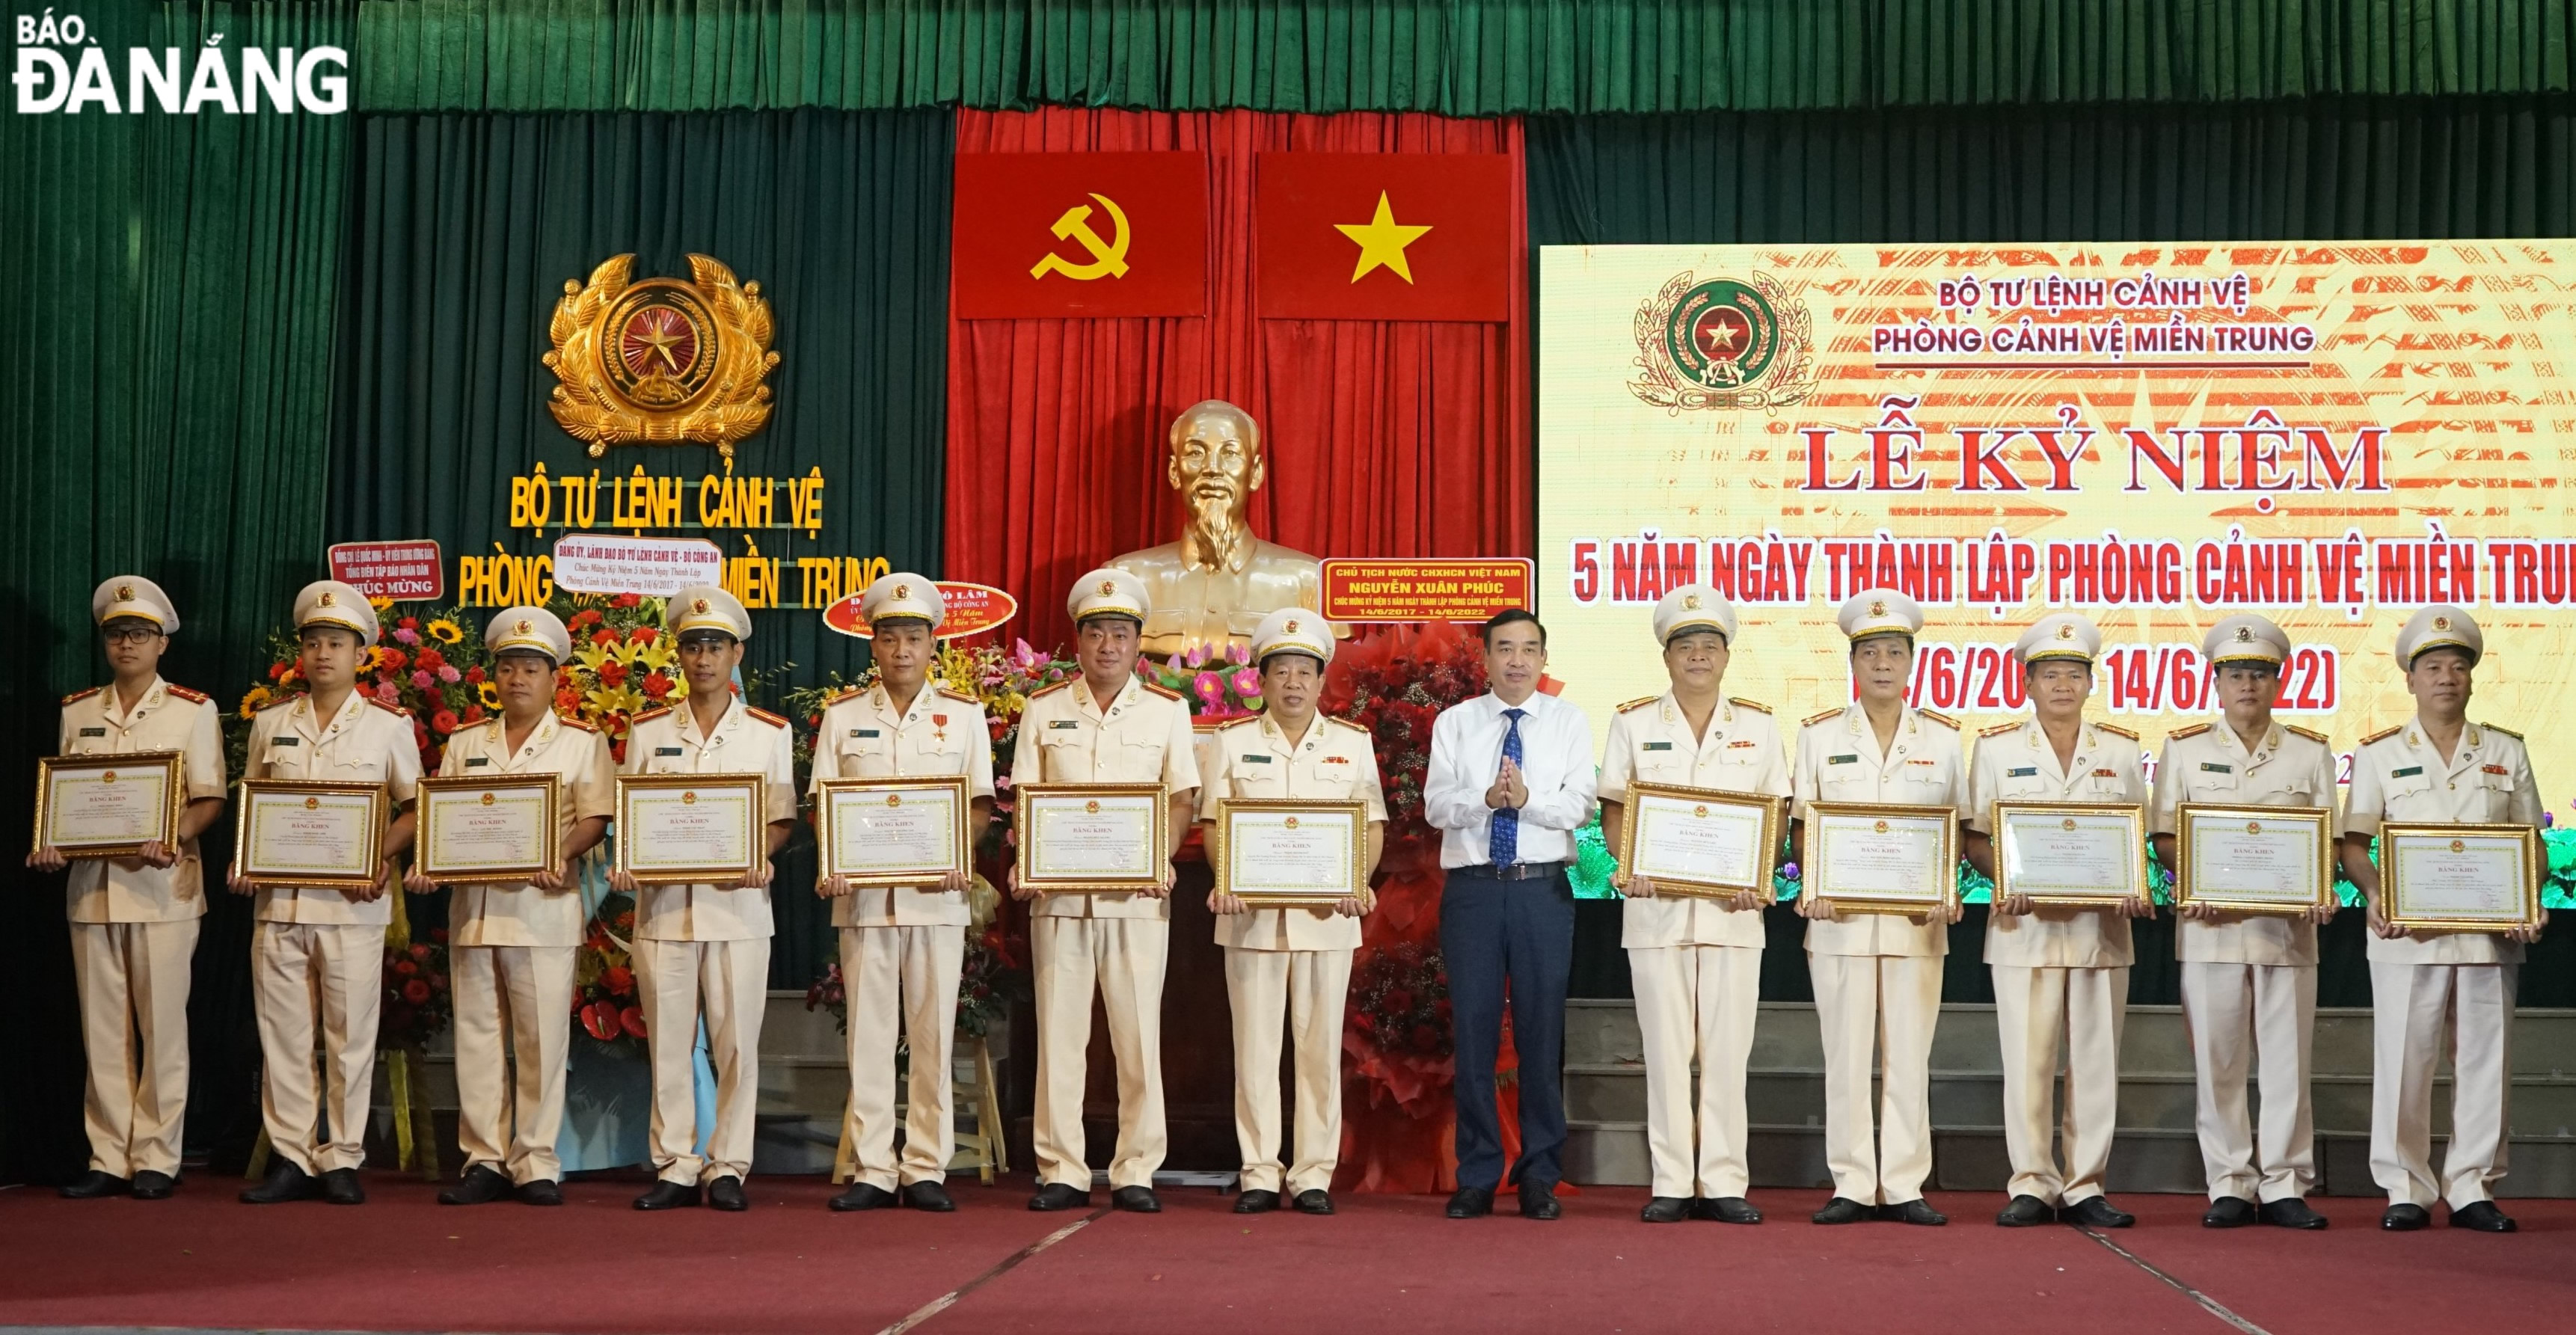 Chủ tịch UBND TP Đà Nẵng Lê Trung Chinh (thứ 6, phải sang) tặng bằng khen cho tập thể và 12 cá nhân của phòng Cảnh vệ miền Trung. Ảnh: LÊ HÙNG